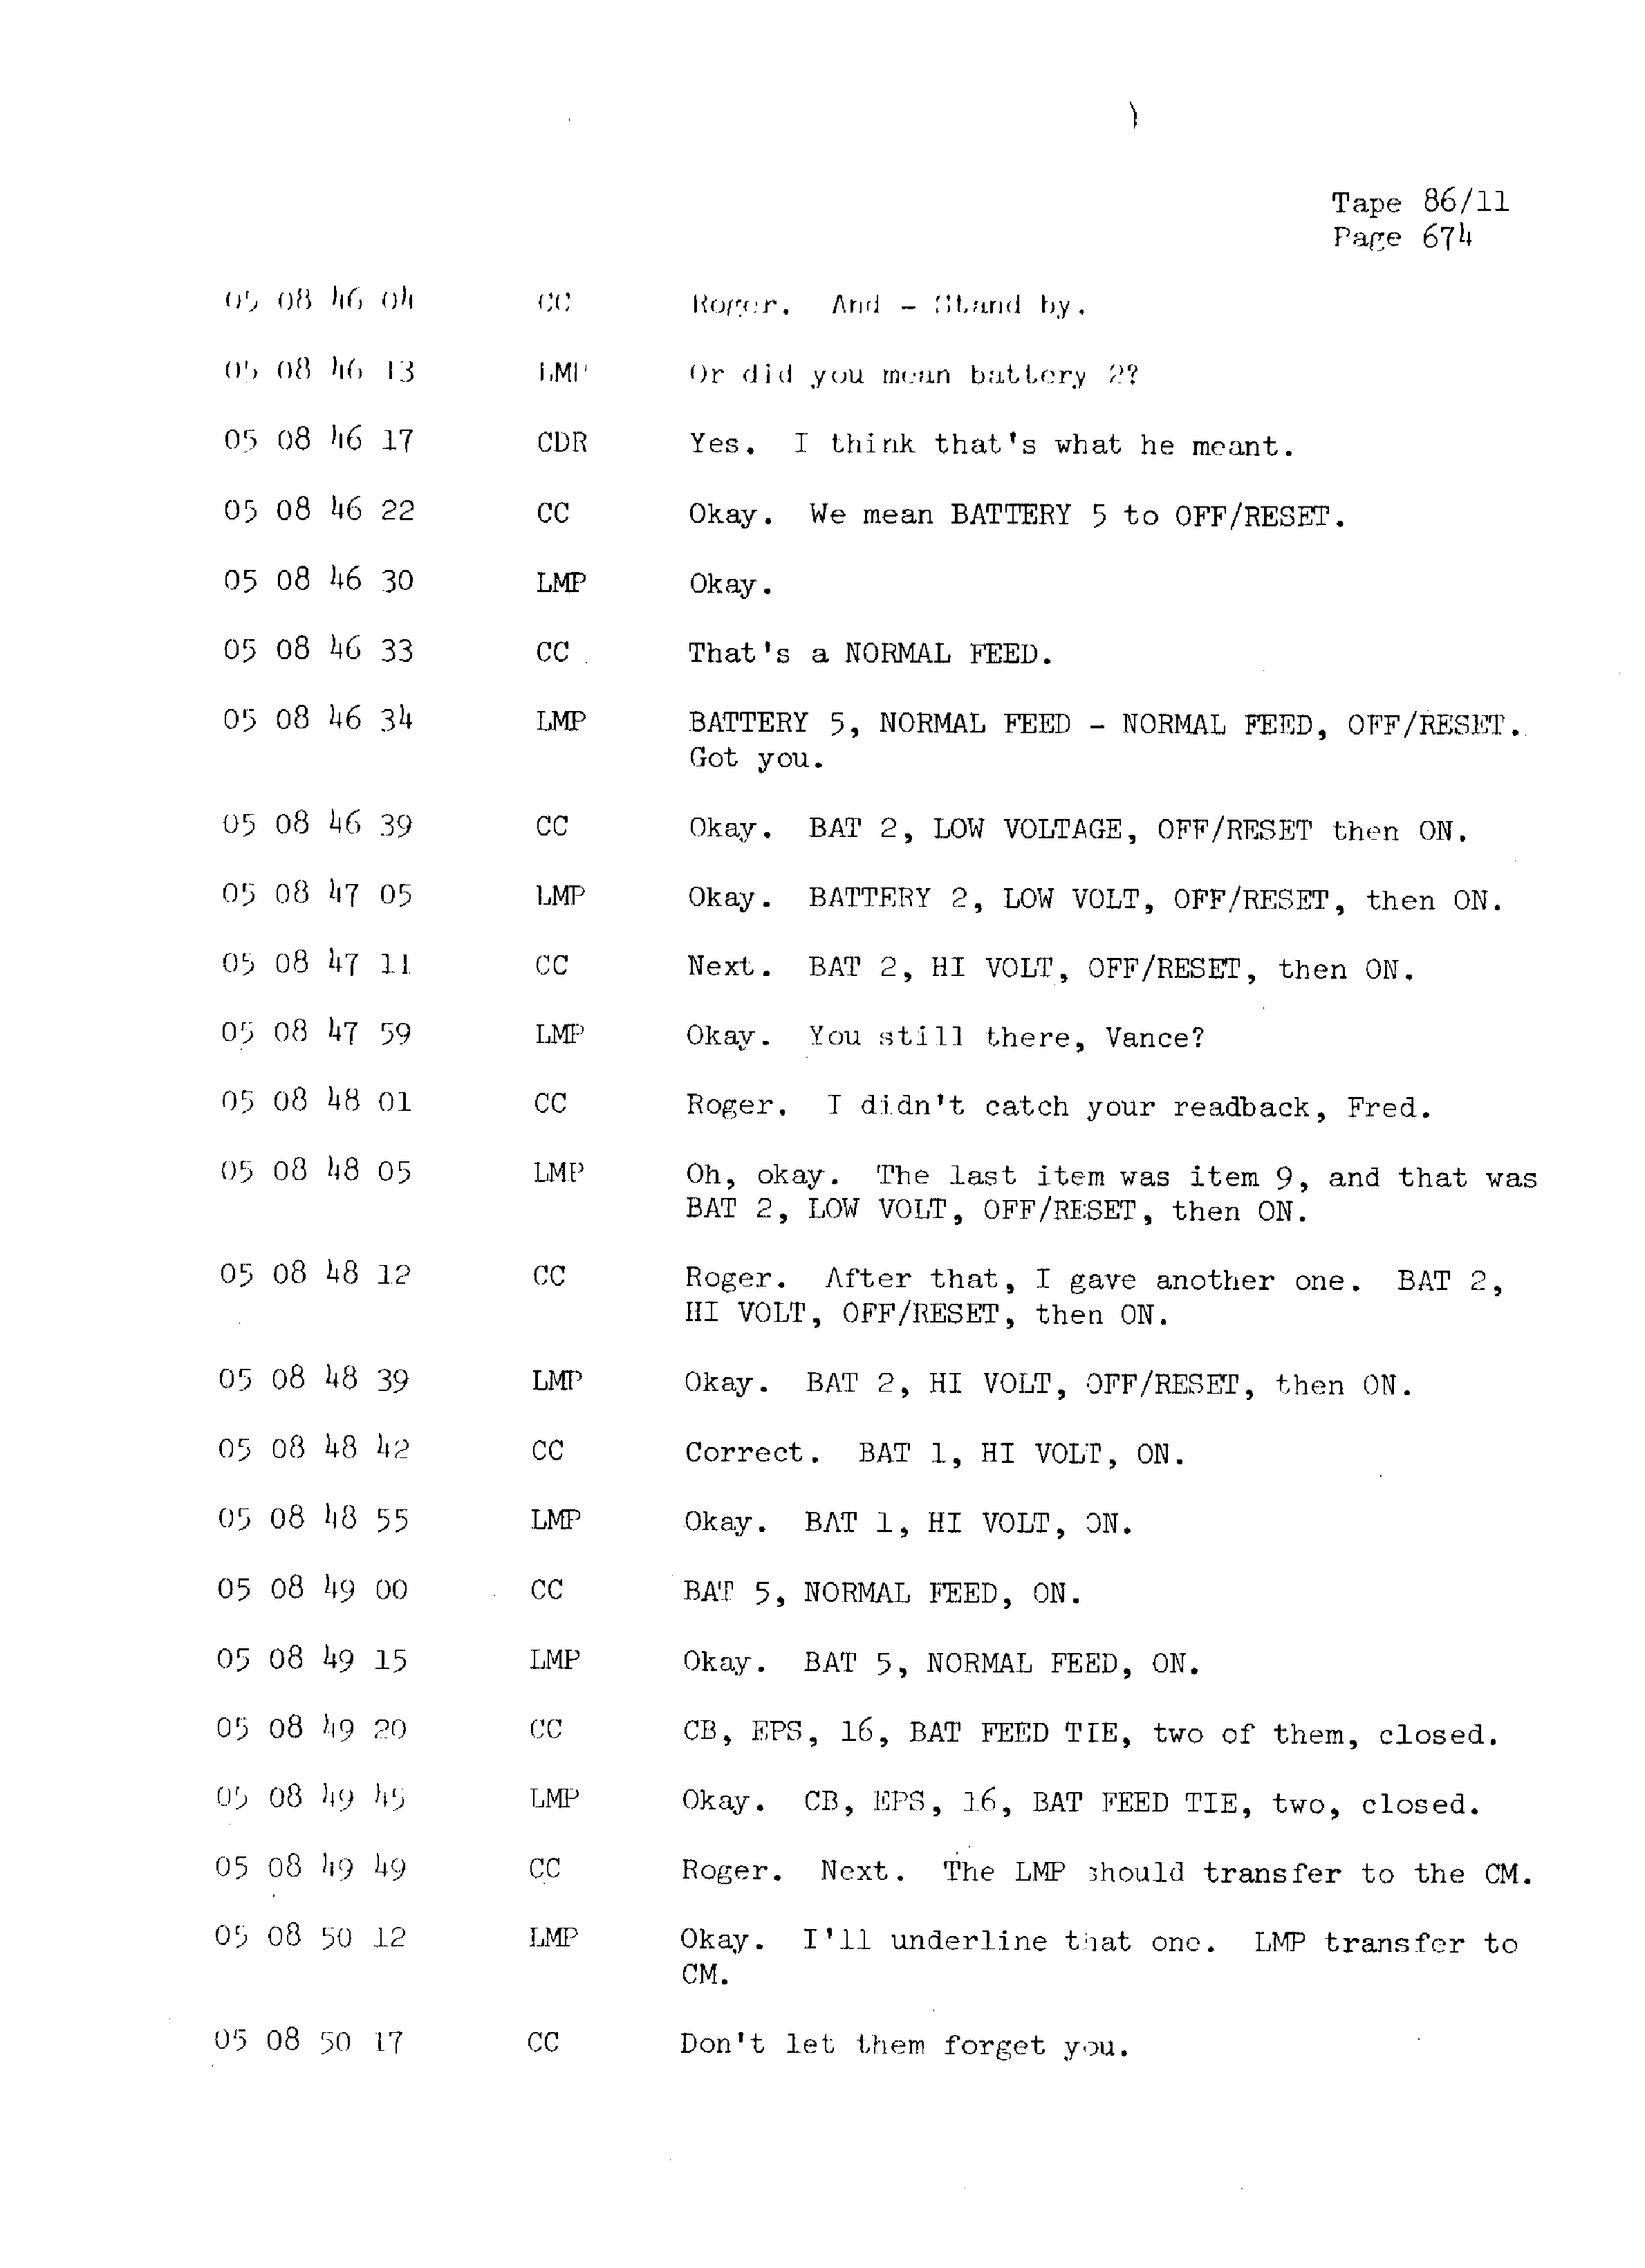 Page 681 of Apollo 13’s original transcript